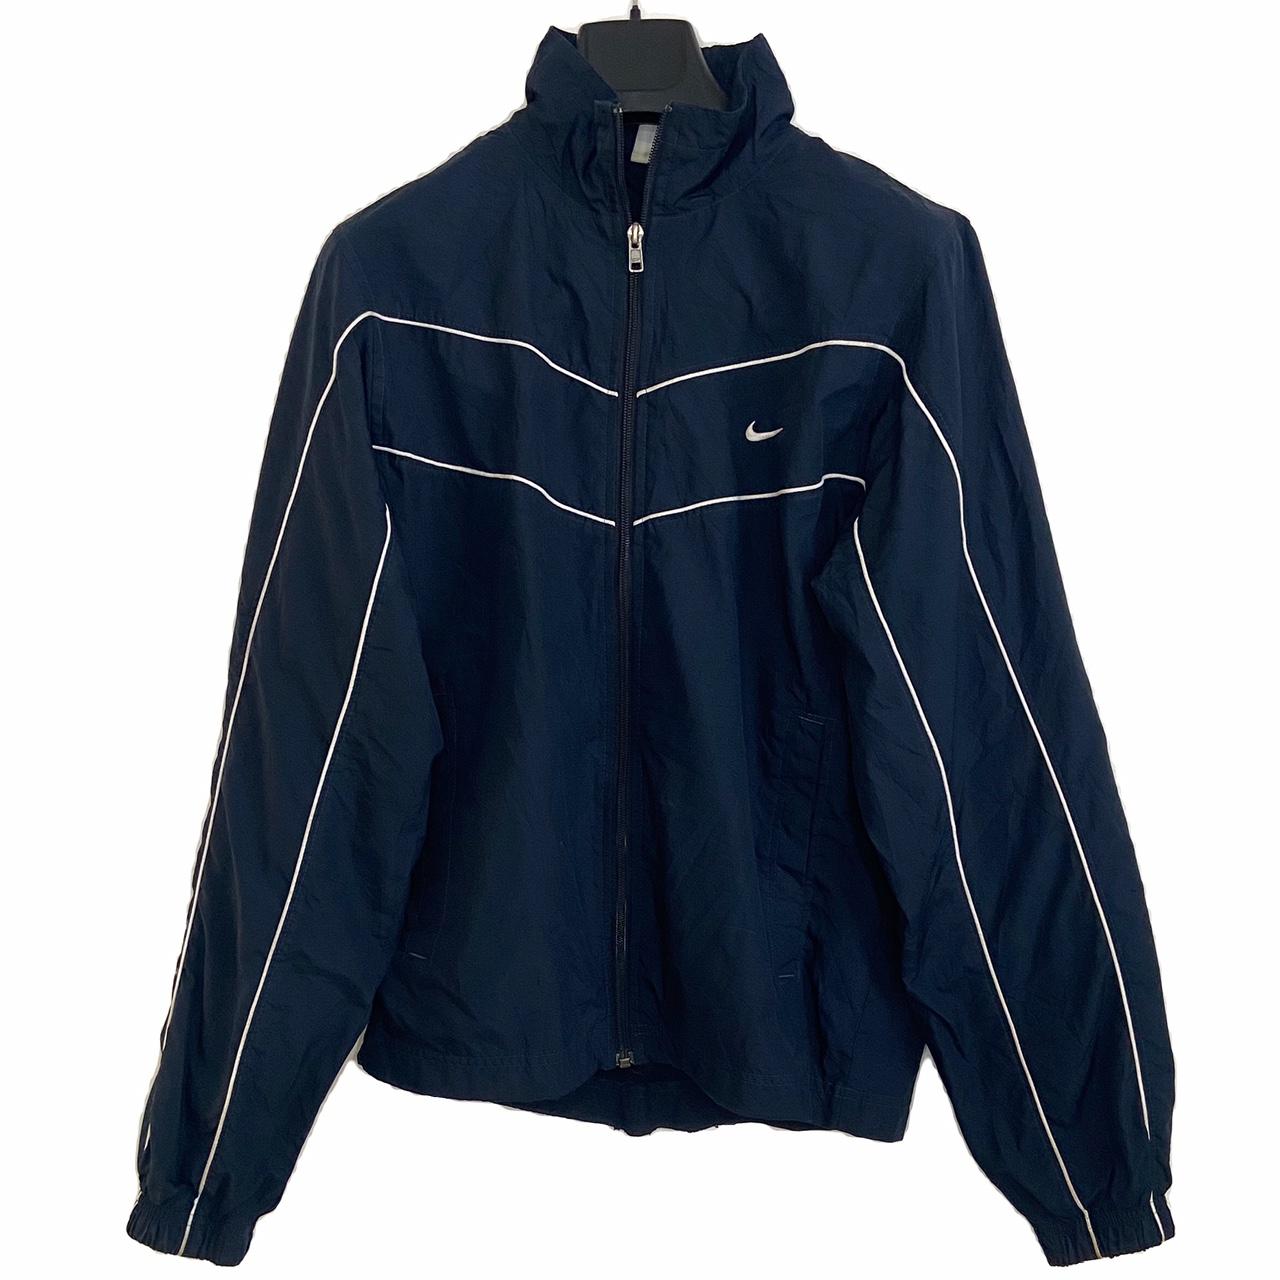 Nike track jacket / windbreaker zip up in a navy... - Depop